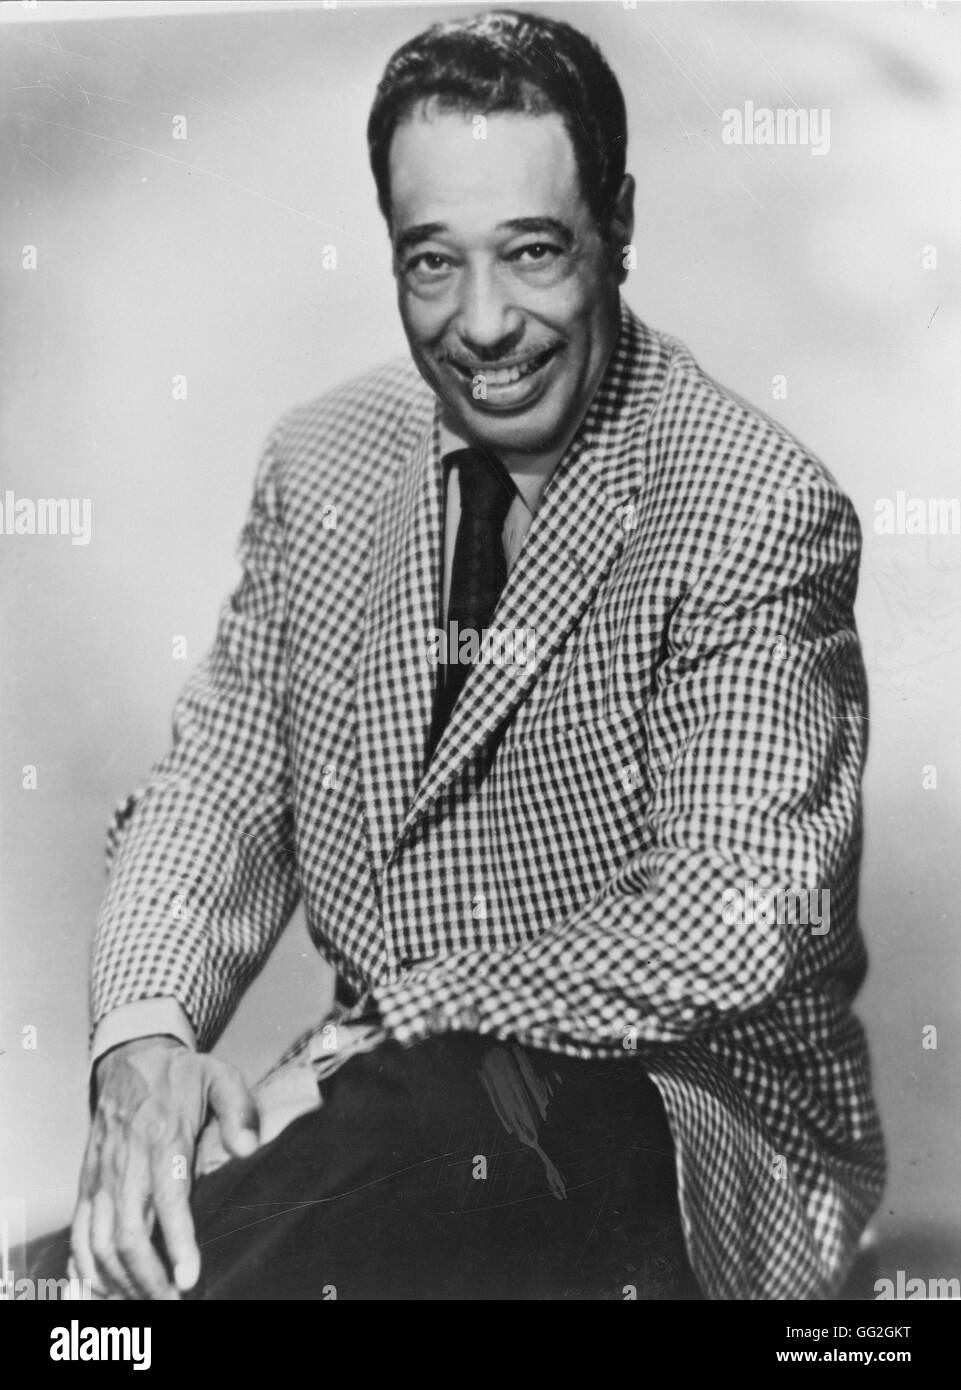 Duke Ellington, trois-quarts portrait photographique par James J. Kriegsmann. c.1963 Banque D'Images